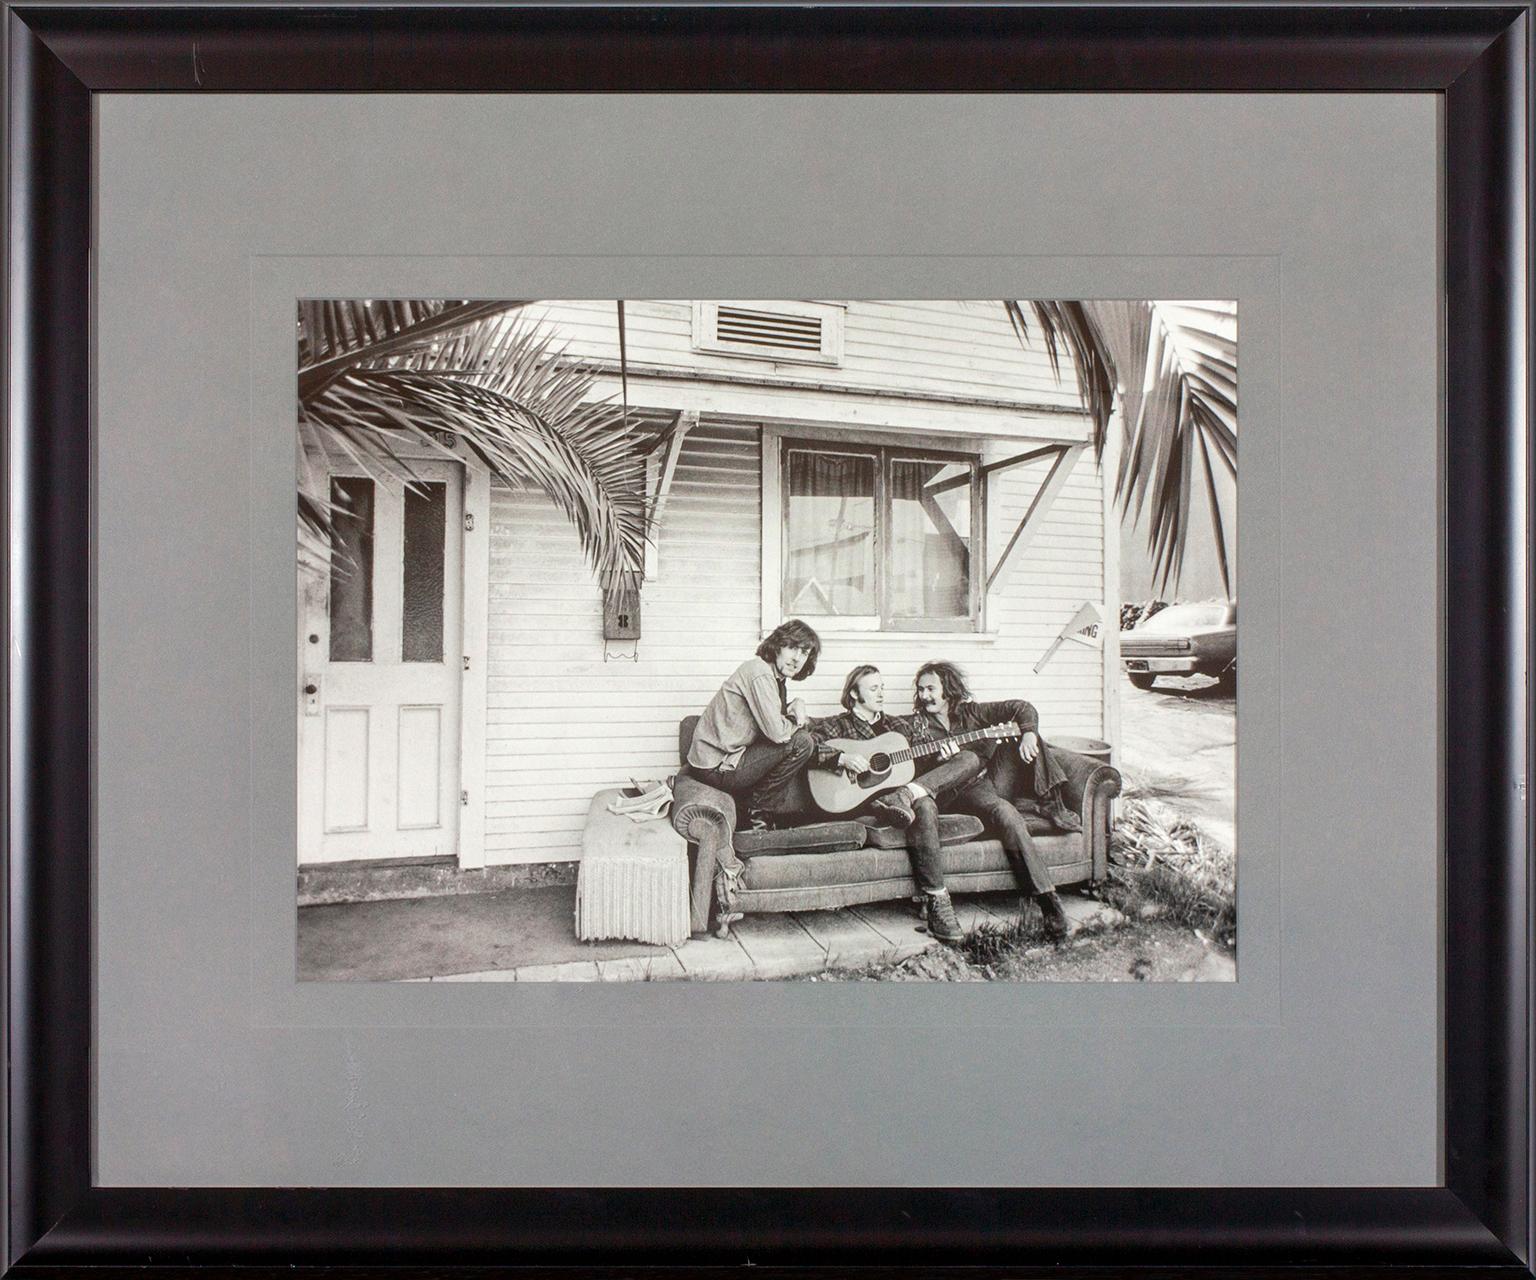 Foto de la sesión fotográfica de la portada del álbum de Crosby, Stills & Nash de 1969 en West Hollywood, California, realizada por el fotógrafo Henry Diltz. Representa a David Crosby, Stephen Stills y Graham Nash sentados en un sofá fuera de una